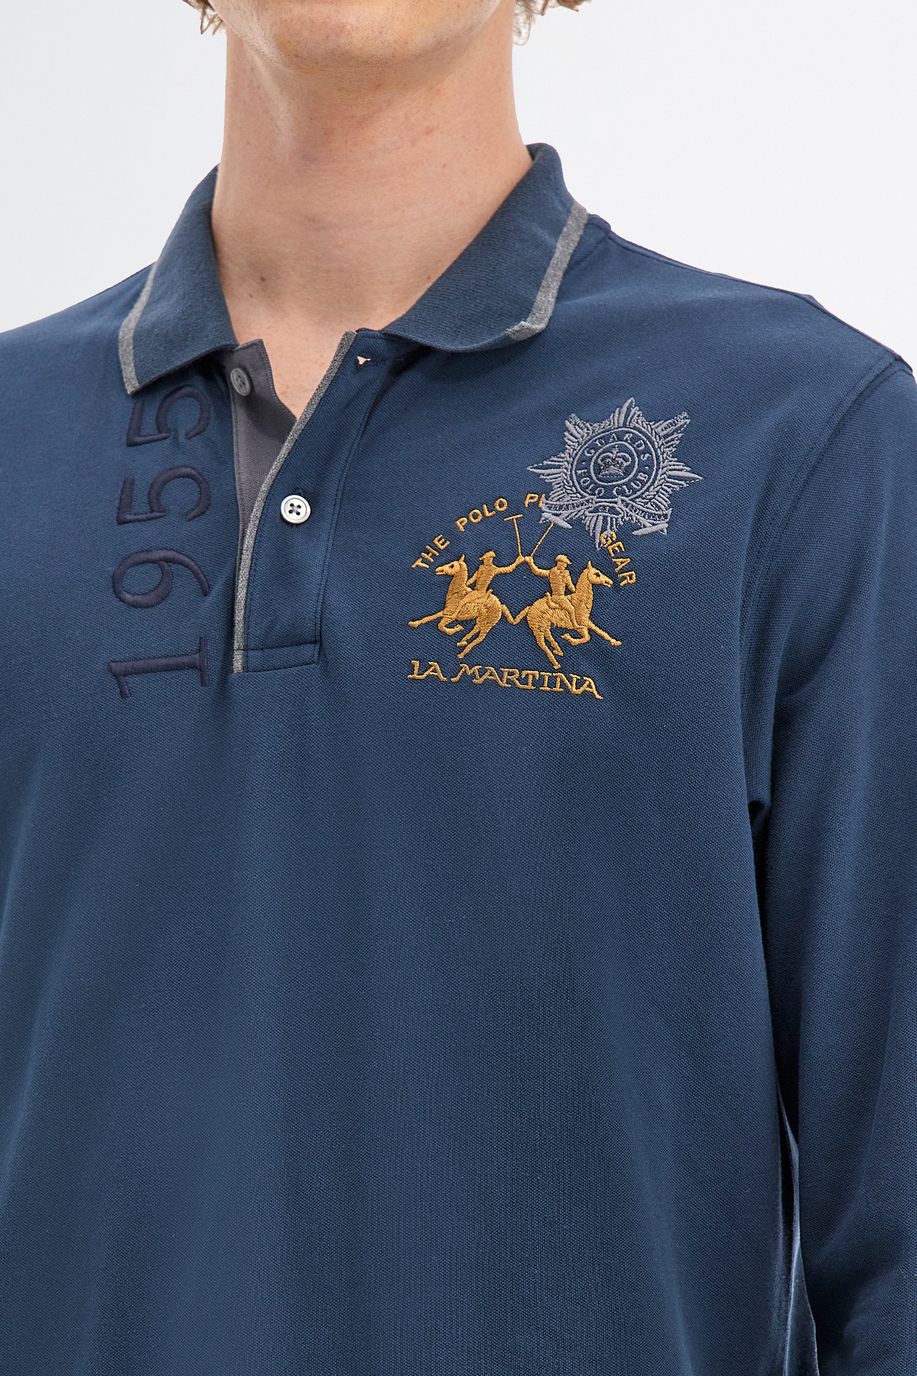 Herren Polo Guards mit langen Ärmeln aus Baumwoll-Stretch - Geschenke unter CHF 175 für ihn | La Martina - Official Online Shop